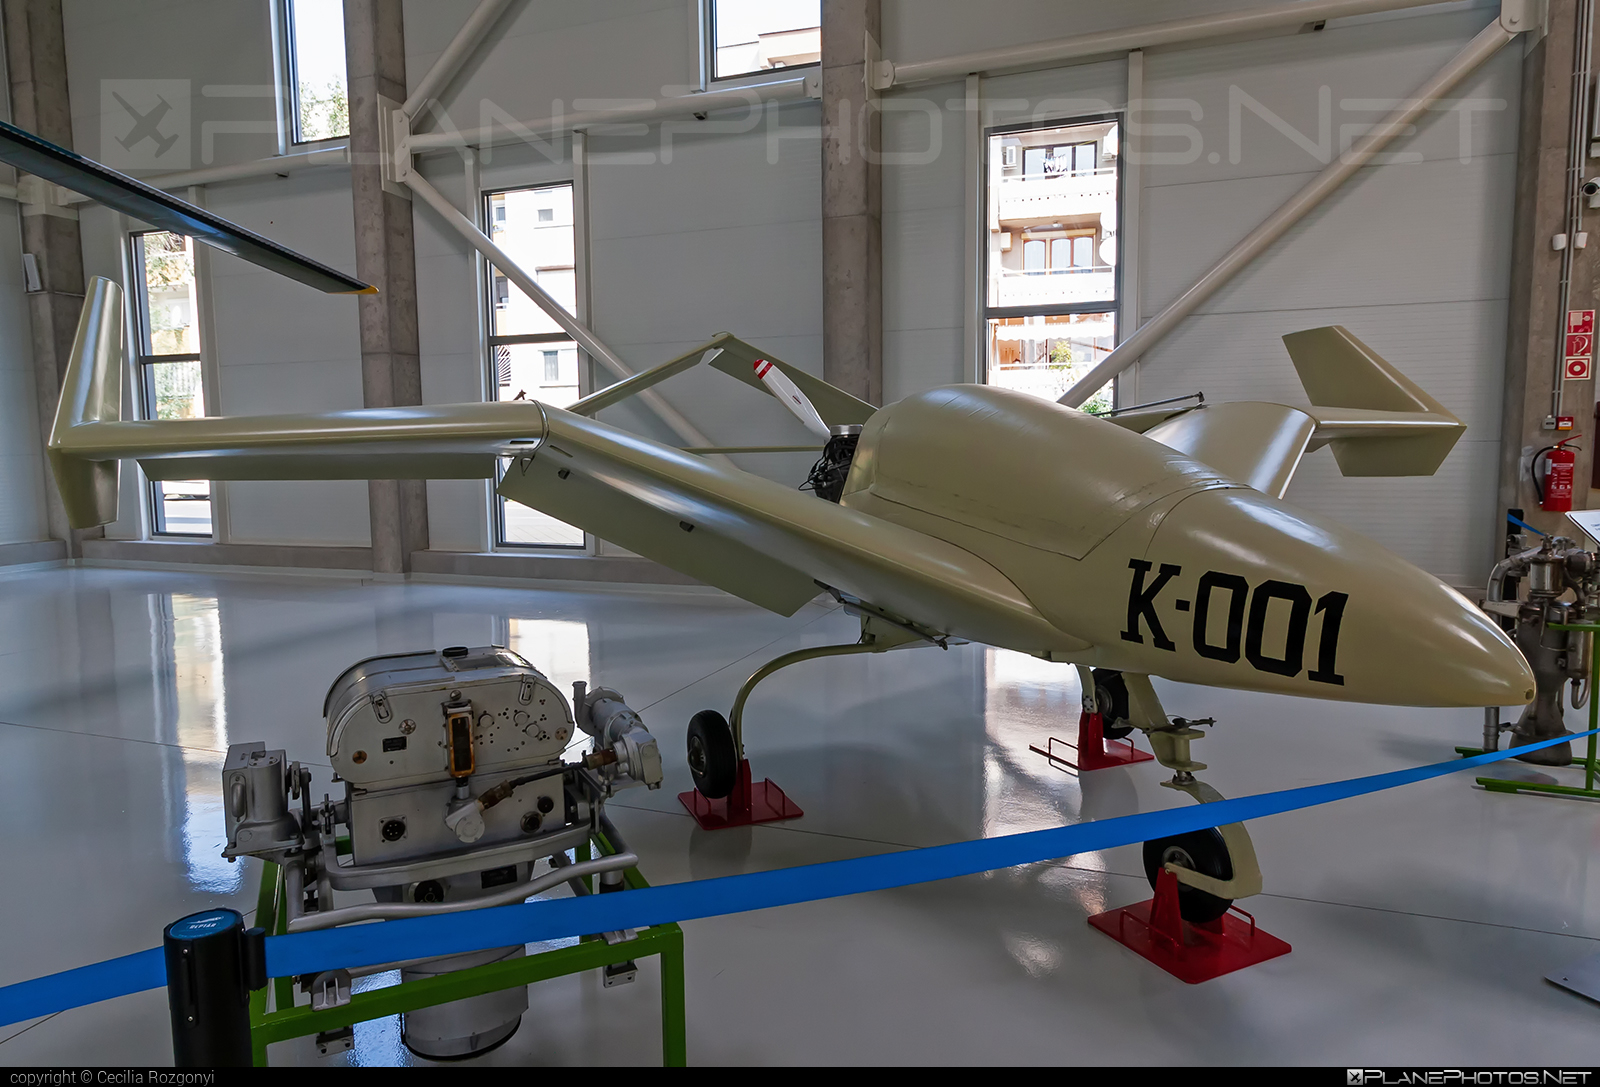 Aviatica K-001 Denevér - K-001 operated by Private operator #k001denever